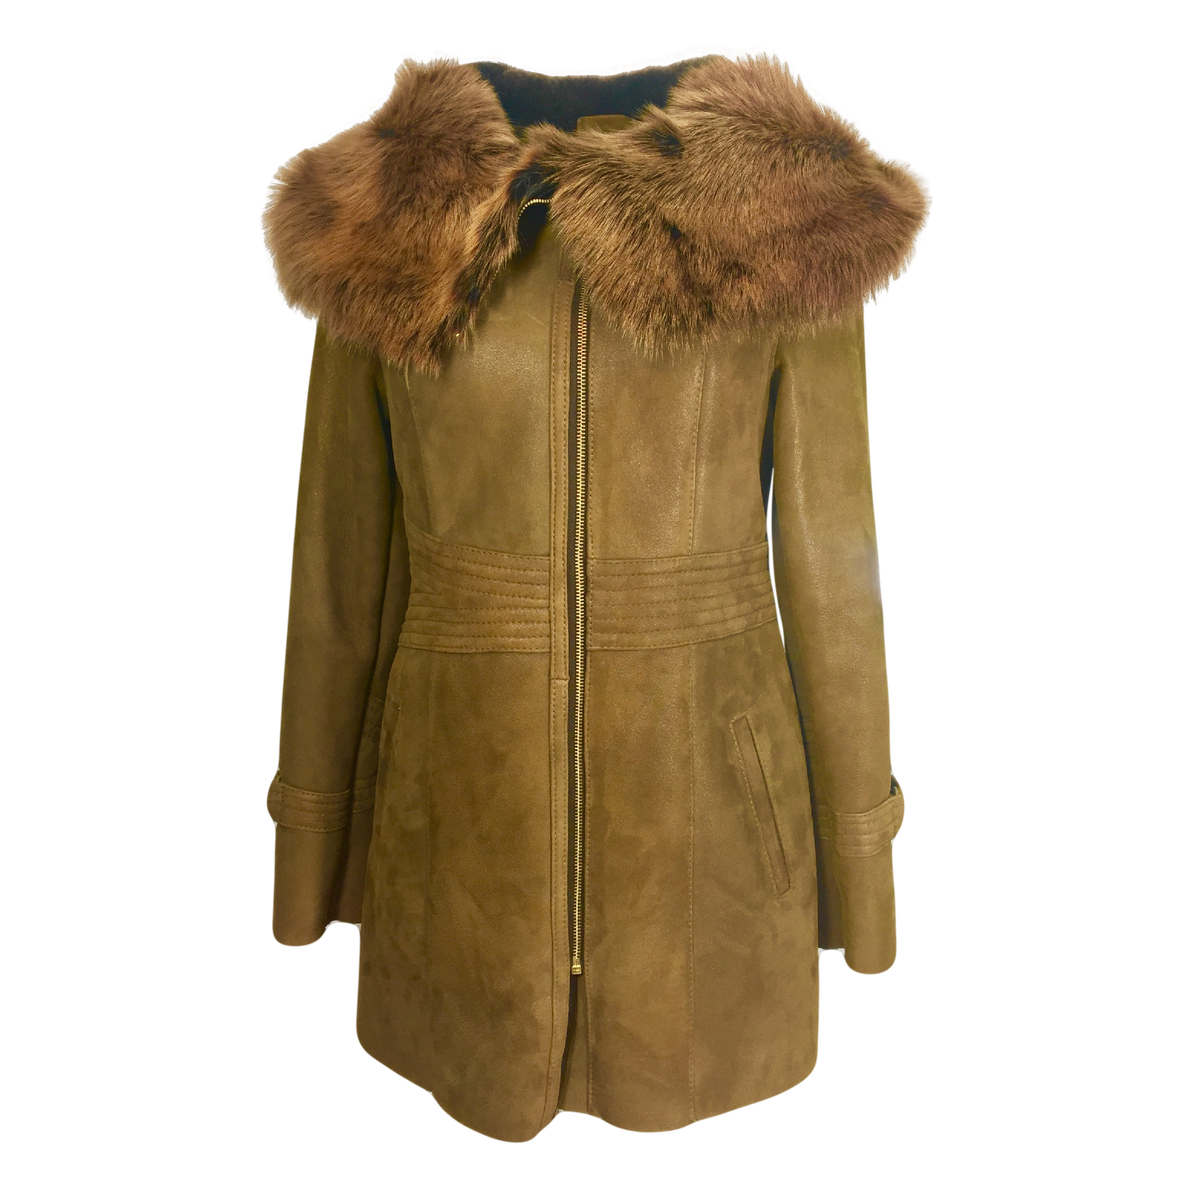 Download PNG image - Fur Lined Leather Jacket Transparent Background 